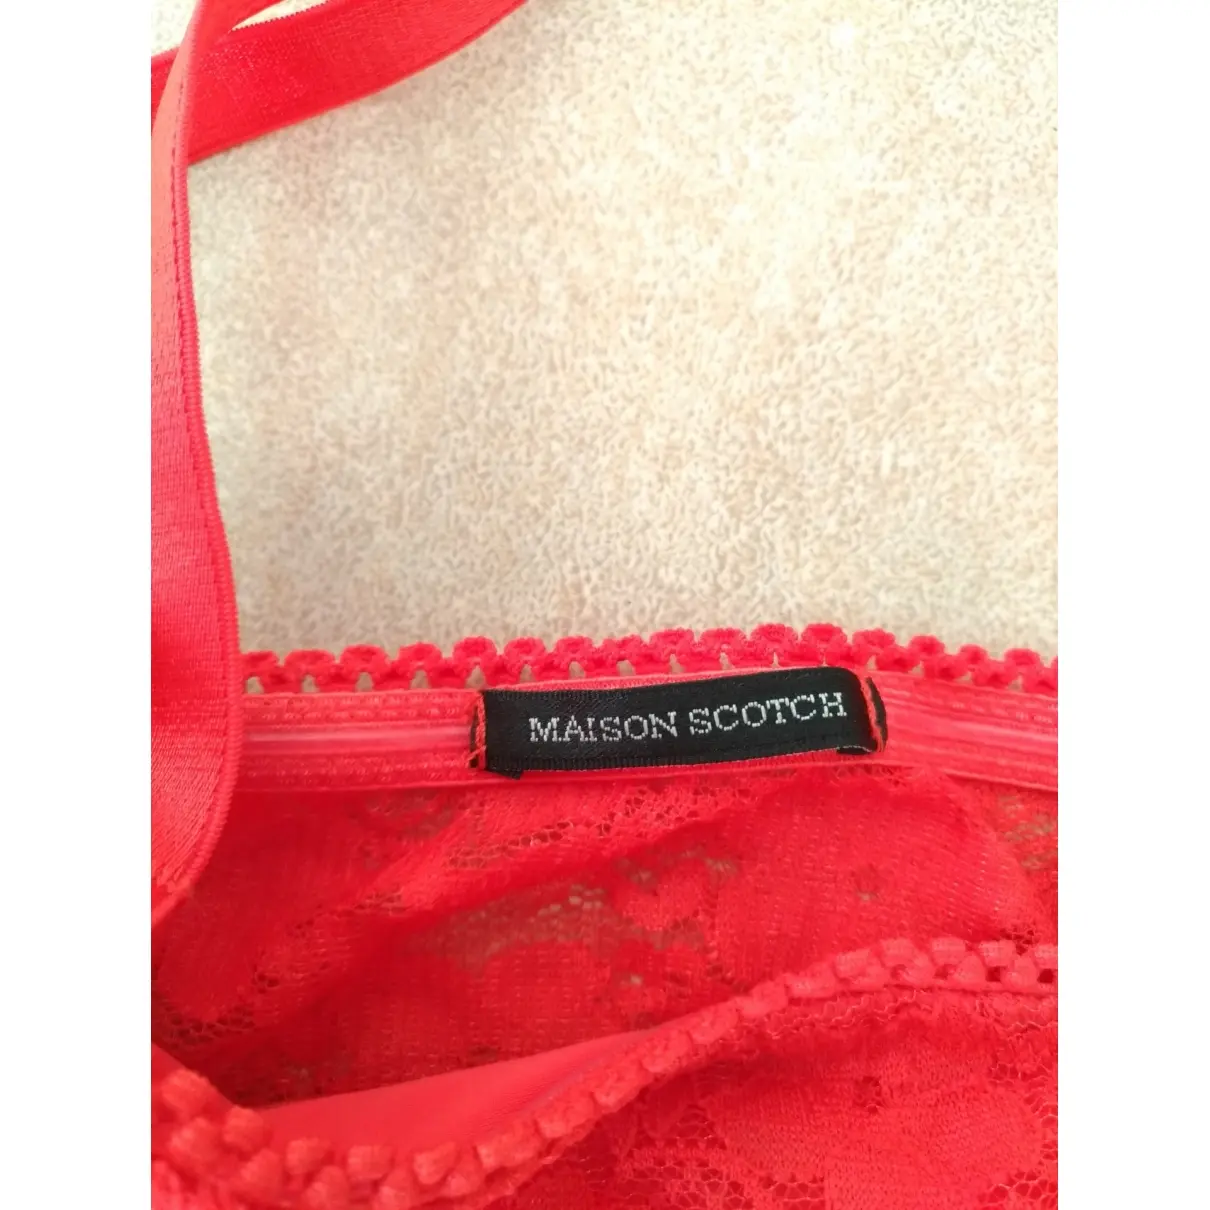 Buy Maison Scotch Lace bra online